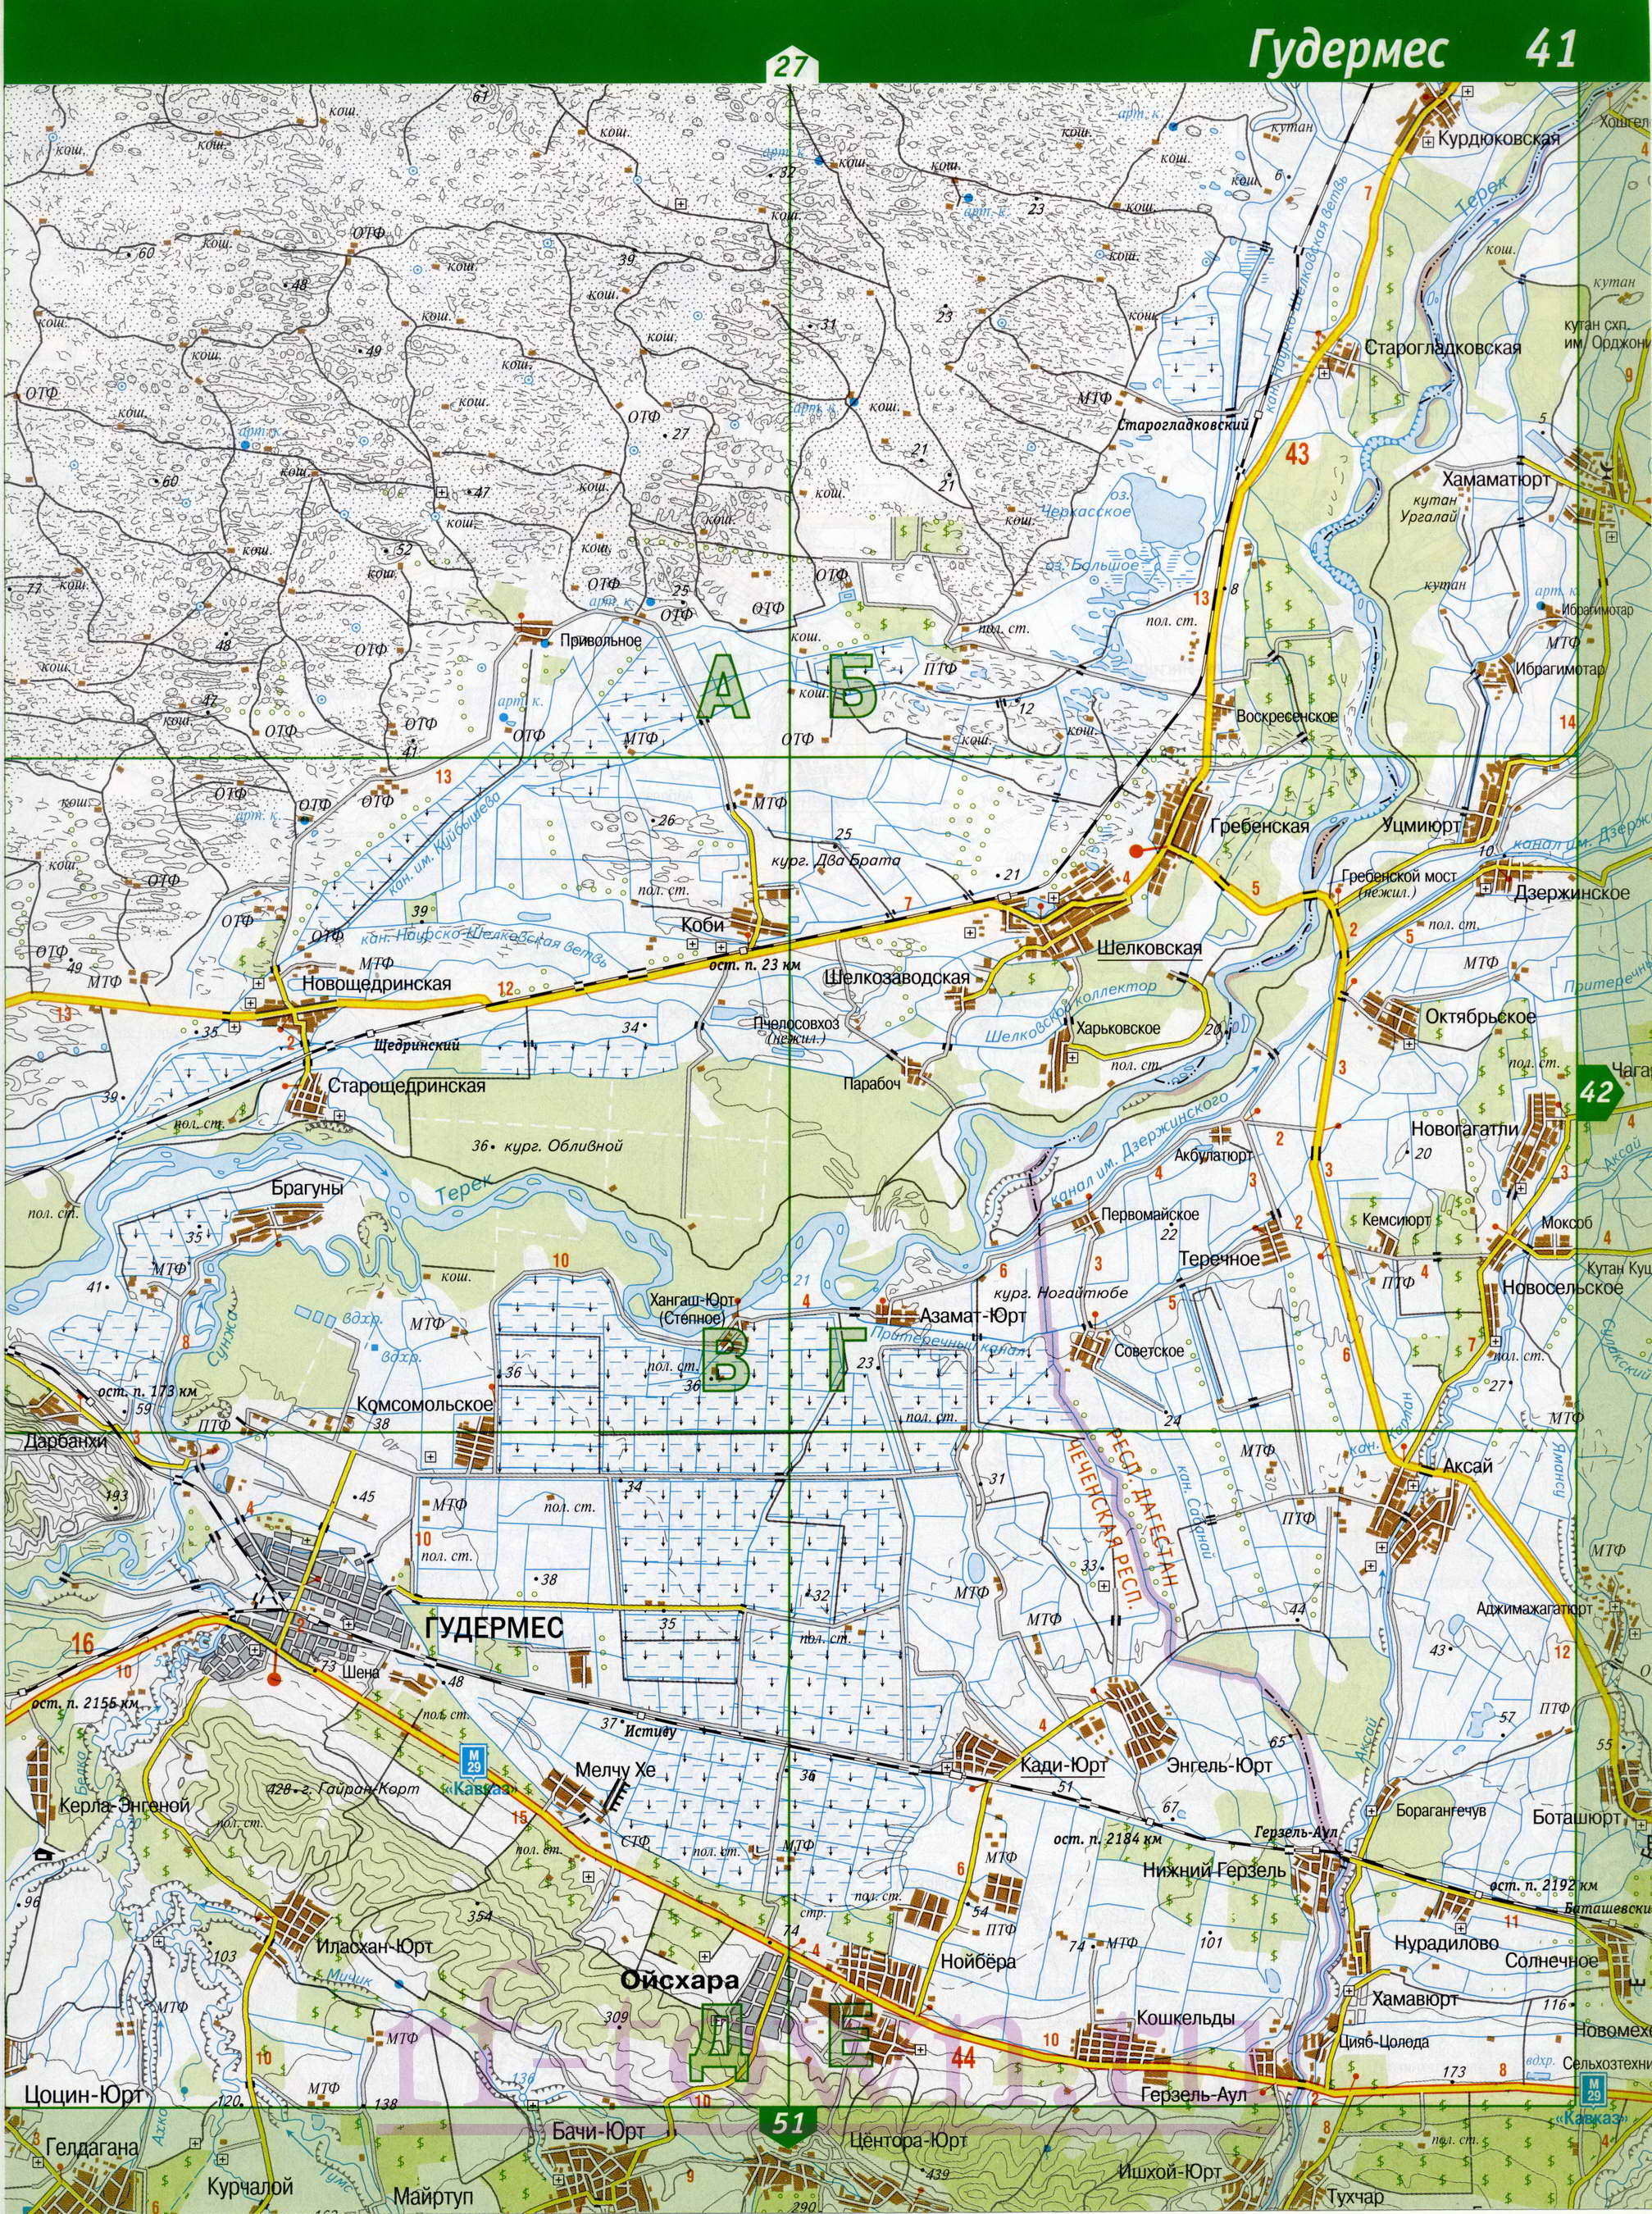 Карта Чечни. Топографическая карта Чечни. Подробная карта Чечни масштаба 1см:2км, C1 - 